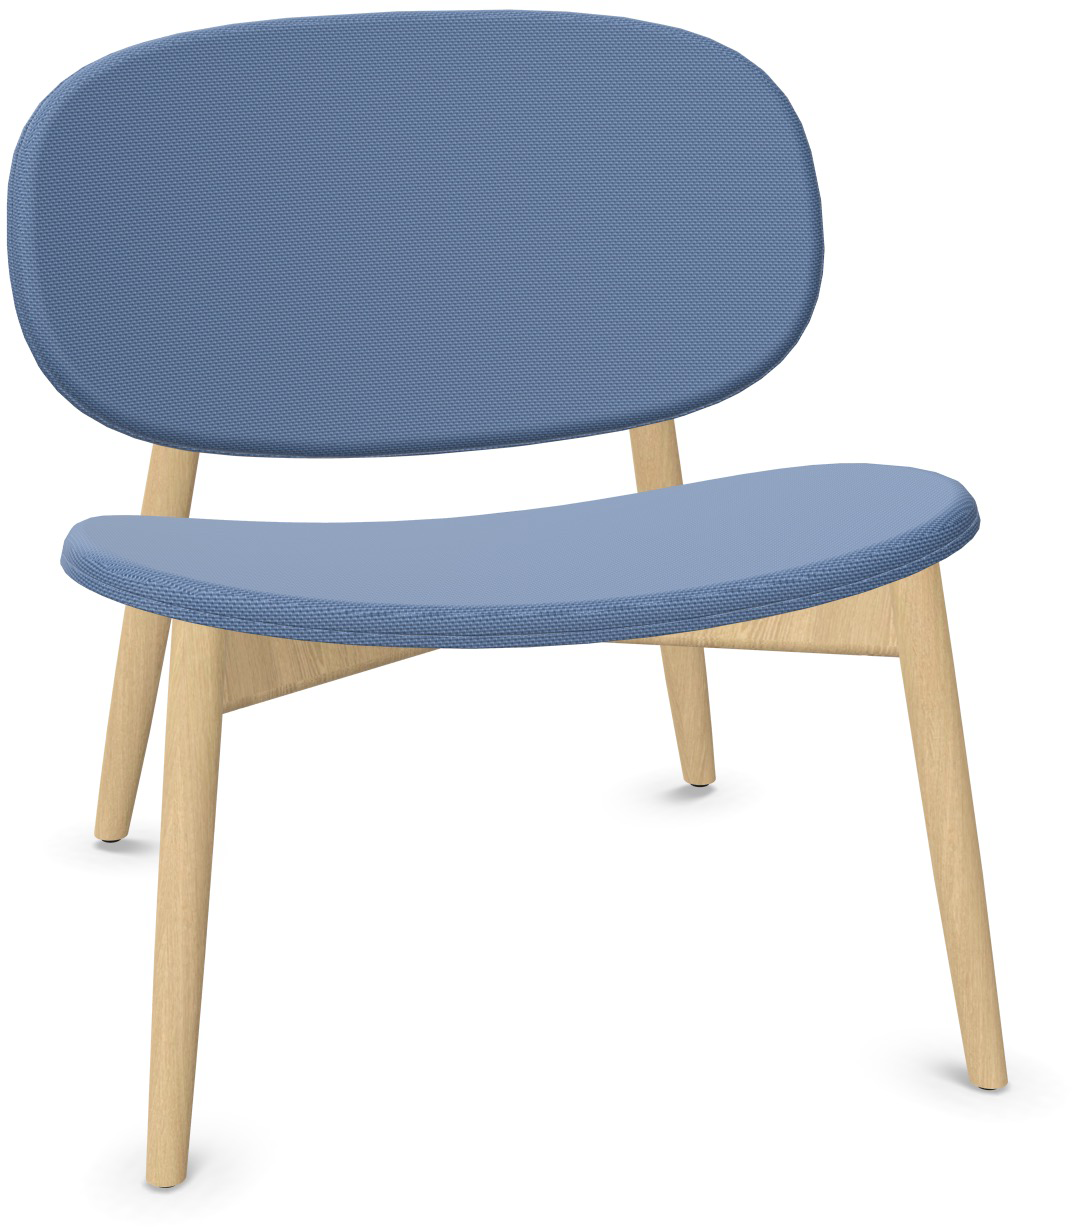 HARMO Relaxsessel in Blau präsentiert im Onlineshop von KAQTU Design AG. Sessel ist von Infiniti Design